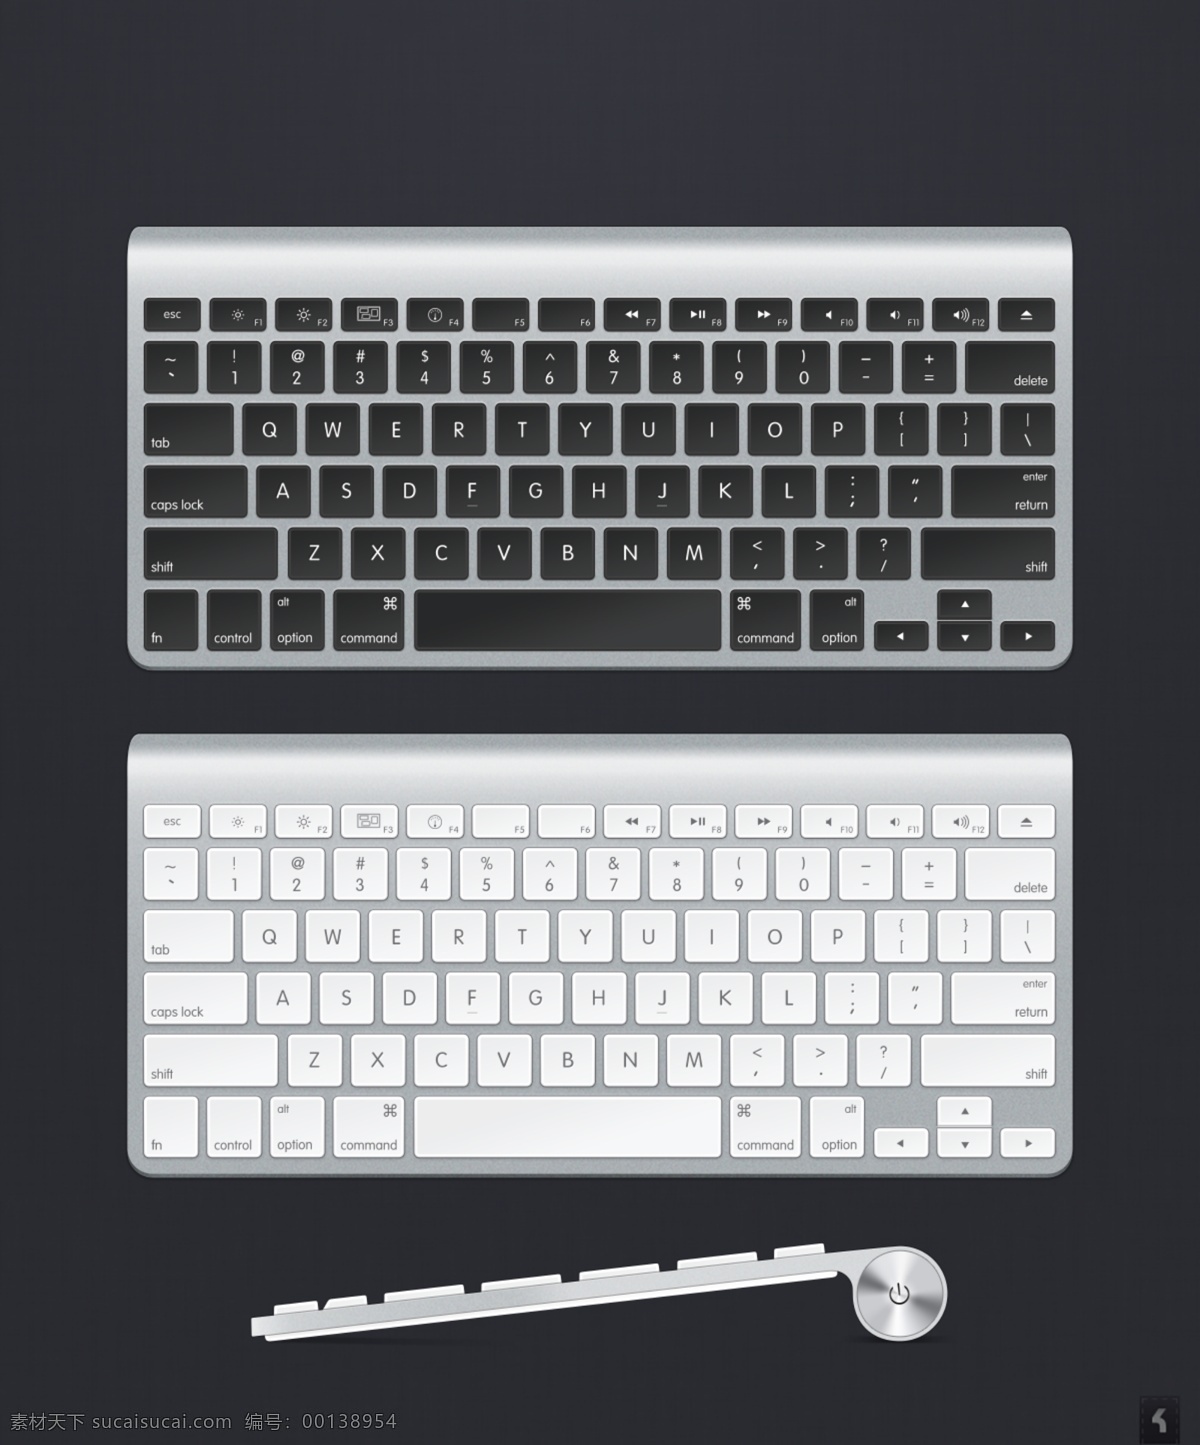 电脑 键盘 耳机 icon 图标 网页icon 网页 icon设计 网页图标 图标设计 电脑键盘图标 键盘图标 耳机图标 耳机icon 键盘icon